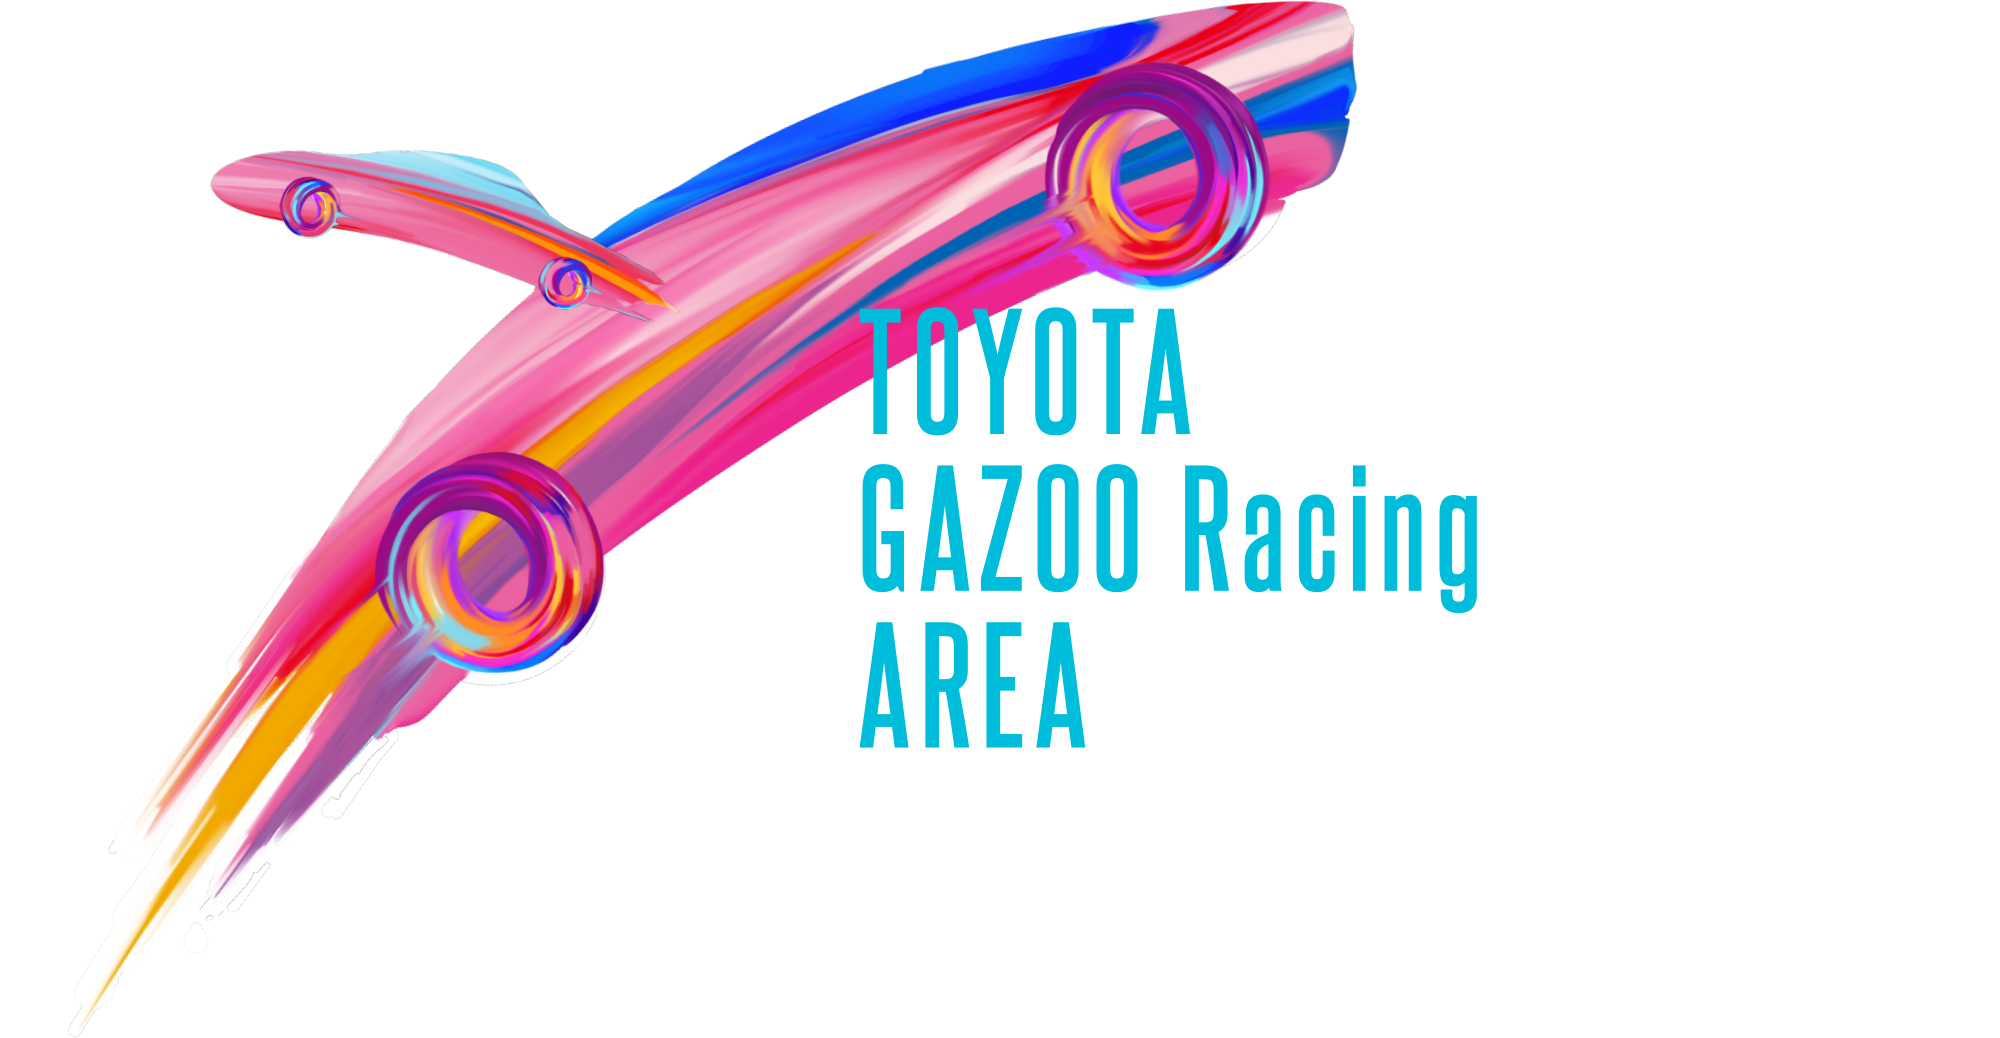 TOYOTA GAZOO Racing AREA